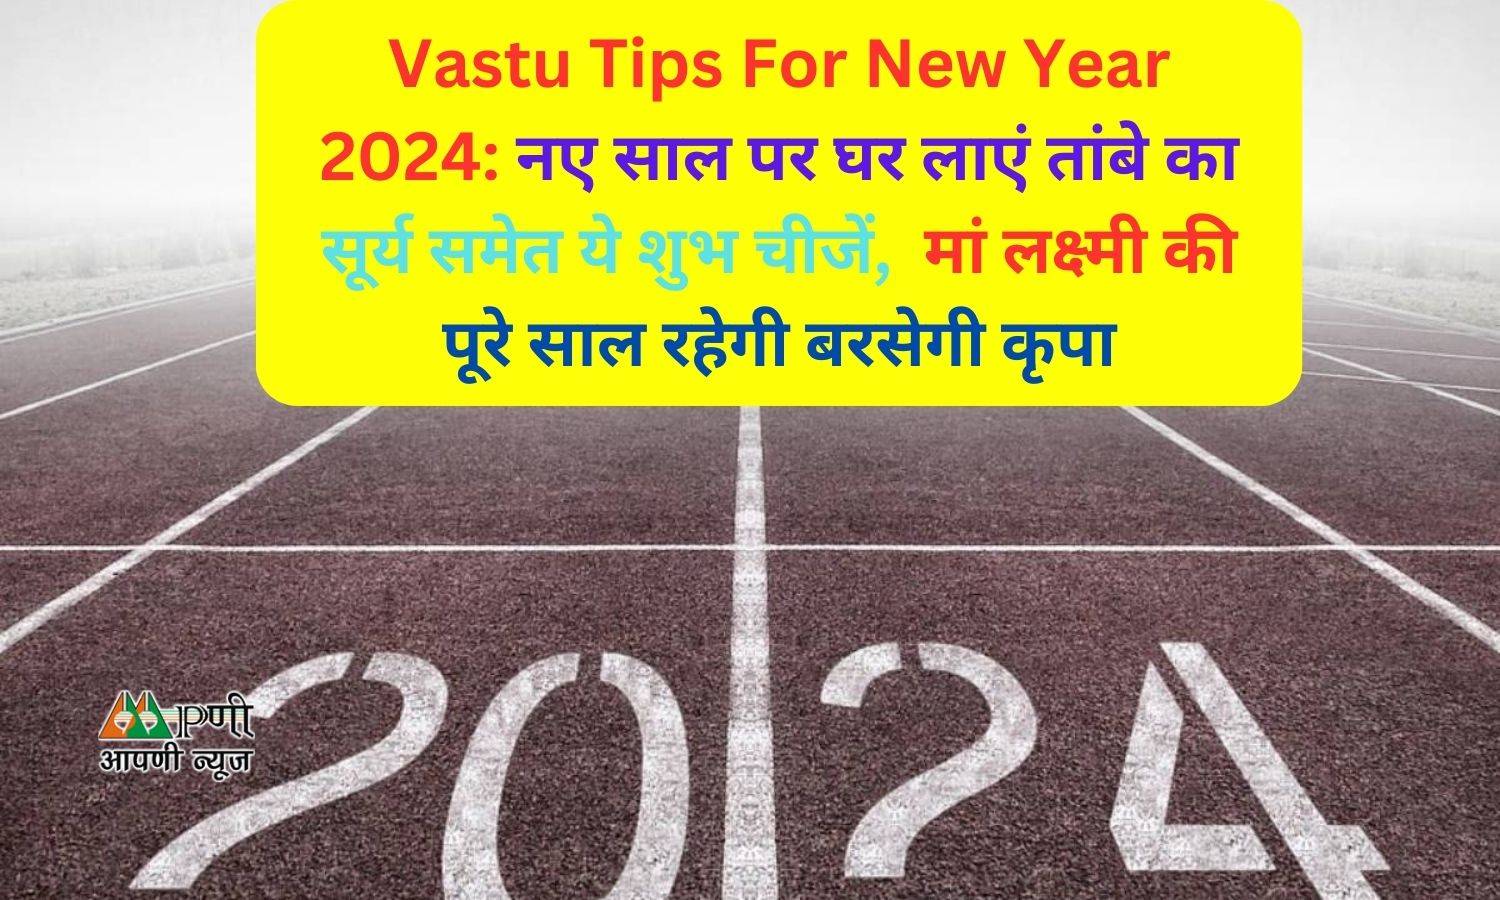 Vastu Tips For New Year 2024: नए साल पर घर लाएं तांबे का सूर्य समेत ये शुभ चीजें,  मां लक्ष्मी की पूरे साल रहेगी बरसेगी कृपा